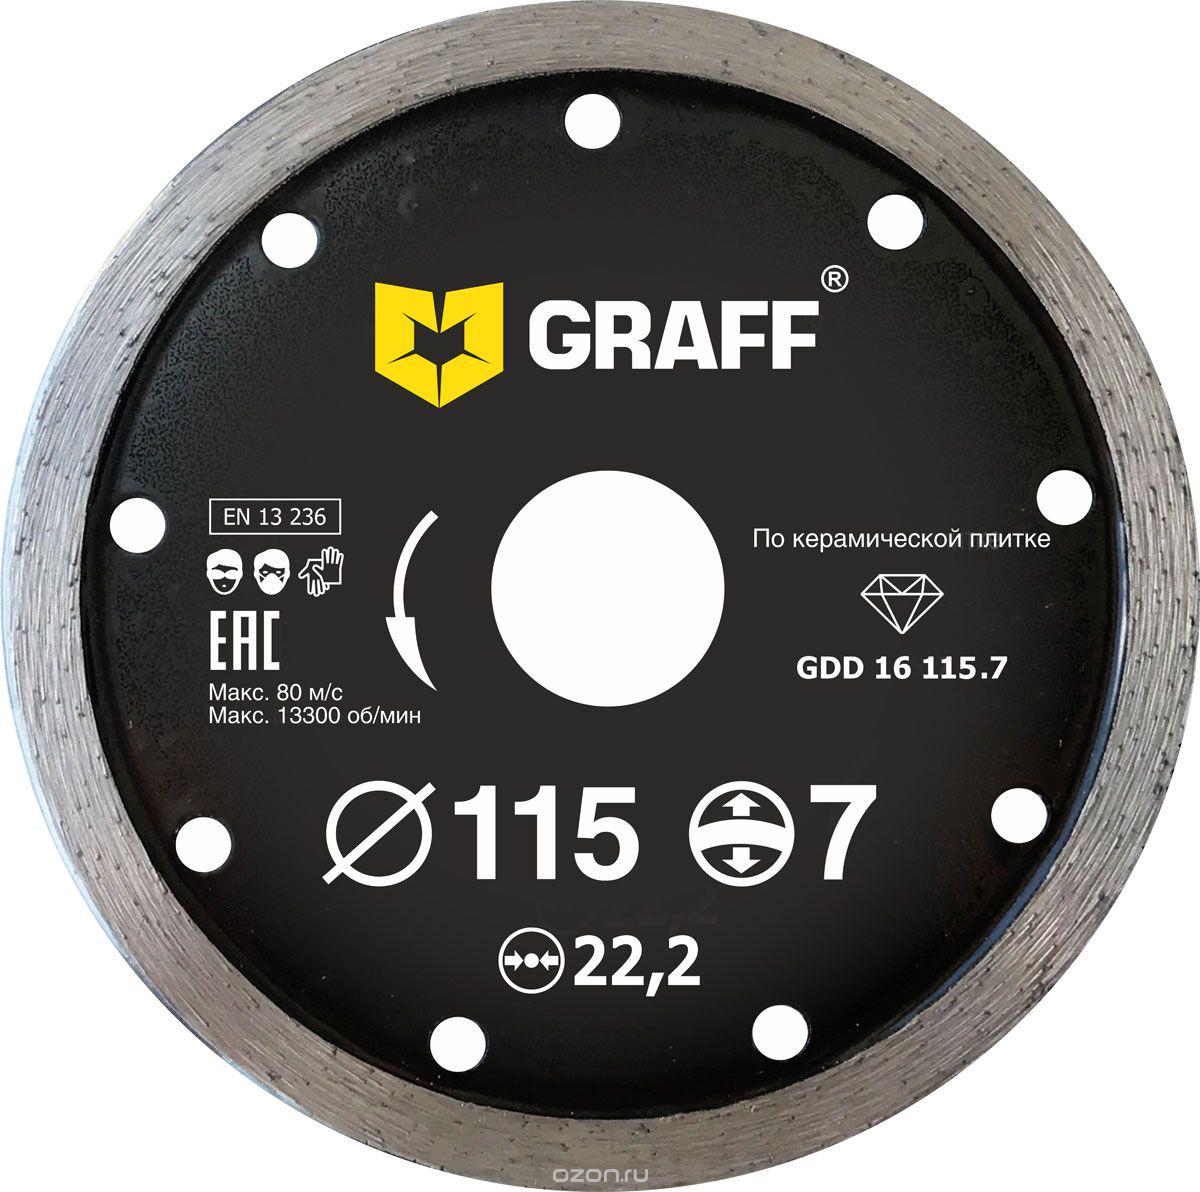 Диск отрезной алмазный GRAFF (GRAFF GDD 16 115.7) Ф115х22мм по керамике диск алмазный отрезной сплошной по кафельной и керамической плитке dexx